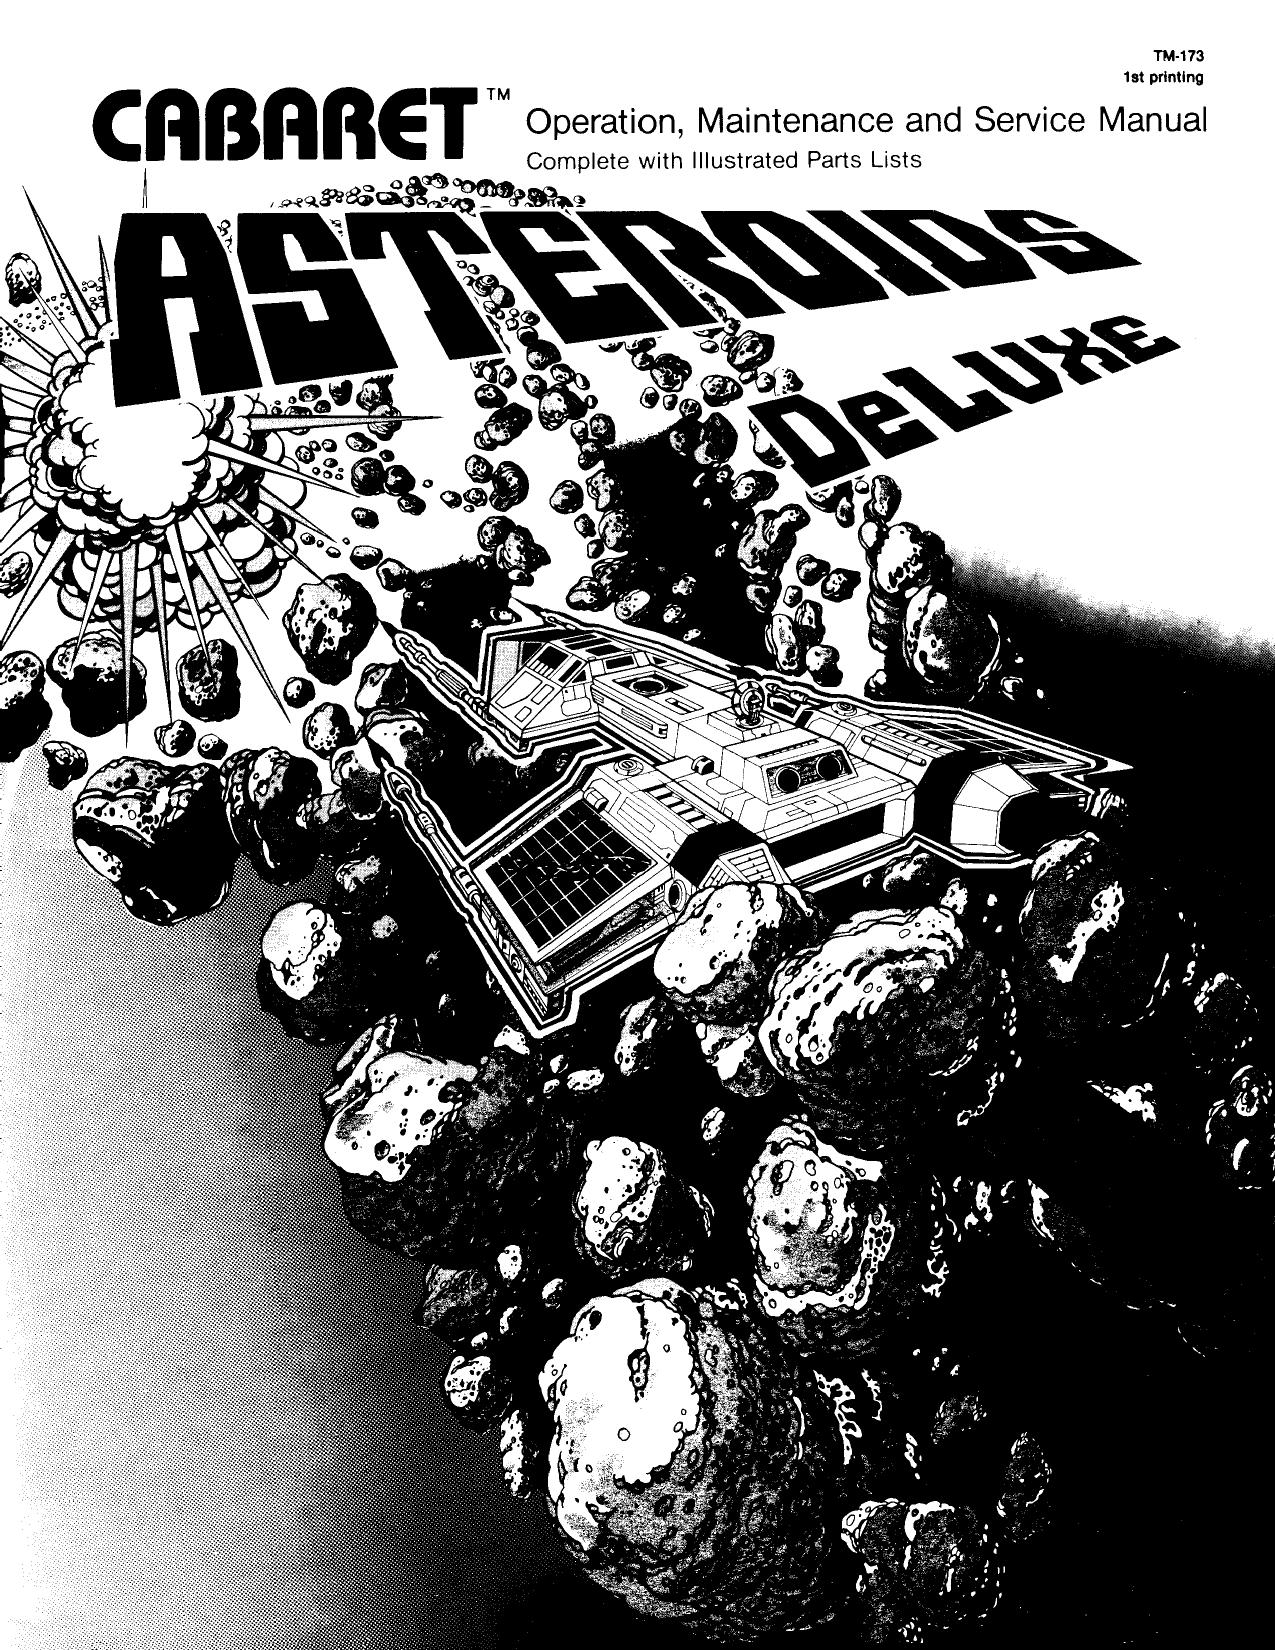 Asteroids Deluxe Caberat TM-173 1st Printing